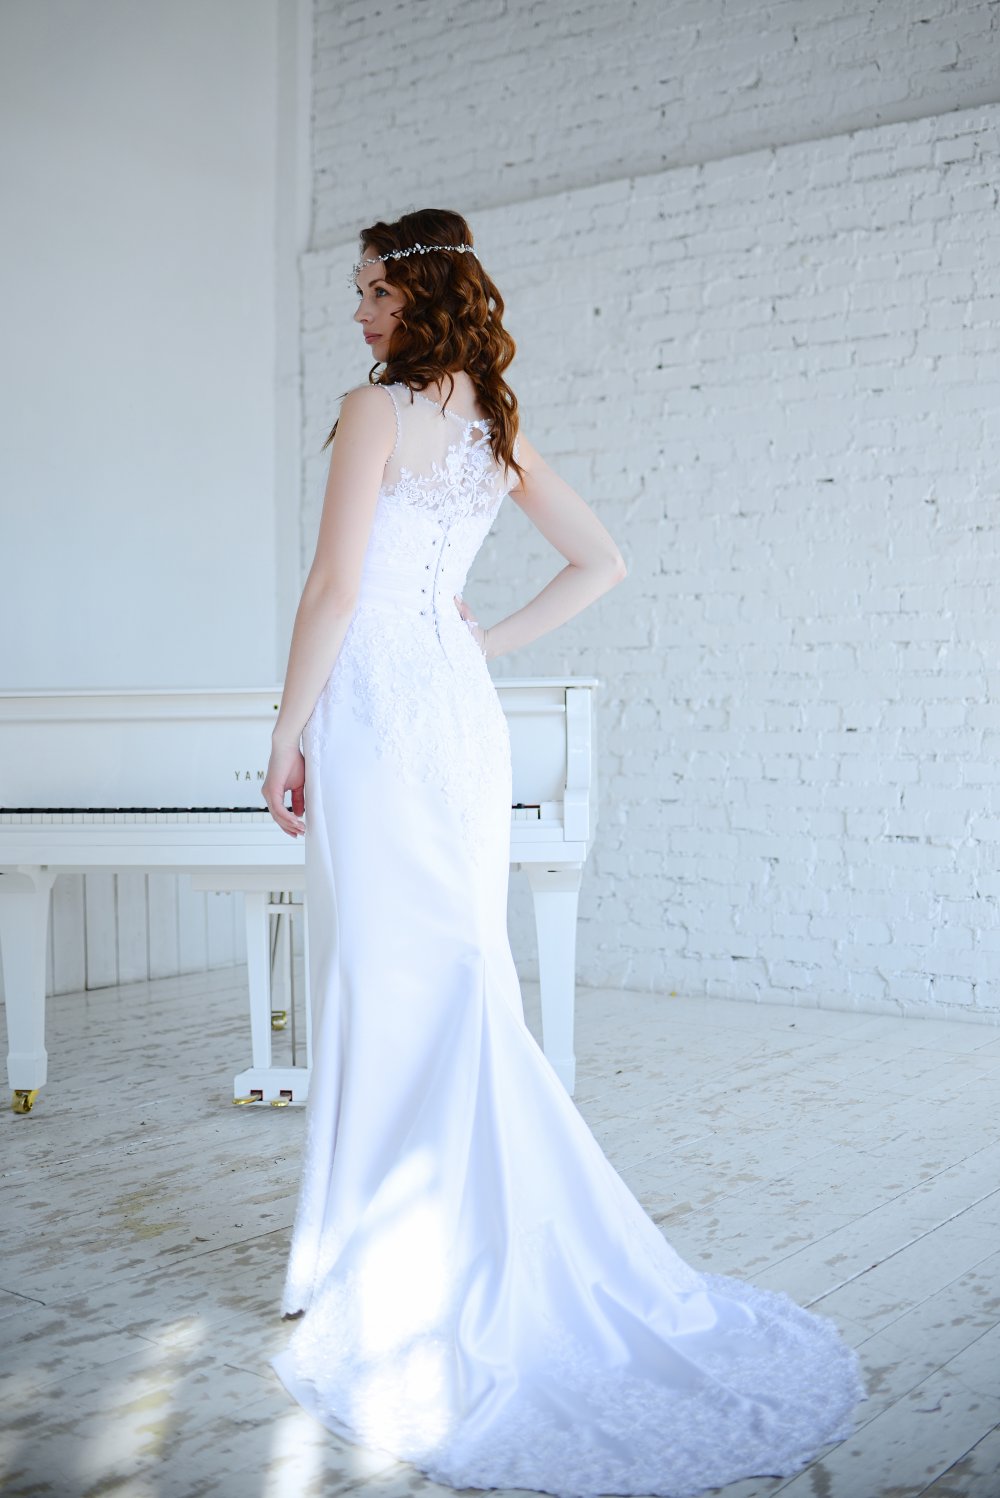 Свадебное платье Аврора из плотного белоснежного атласа, отделанное кружевом и расшитое жемчужинами и кристаллами, с небольшим шлейфом.